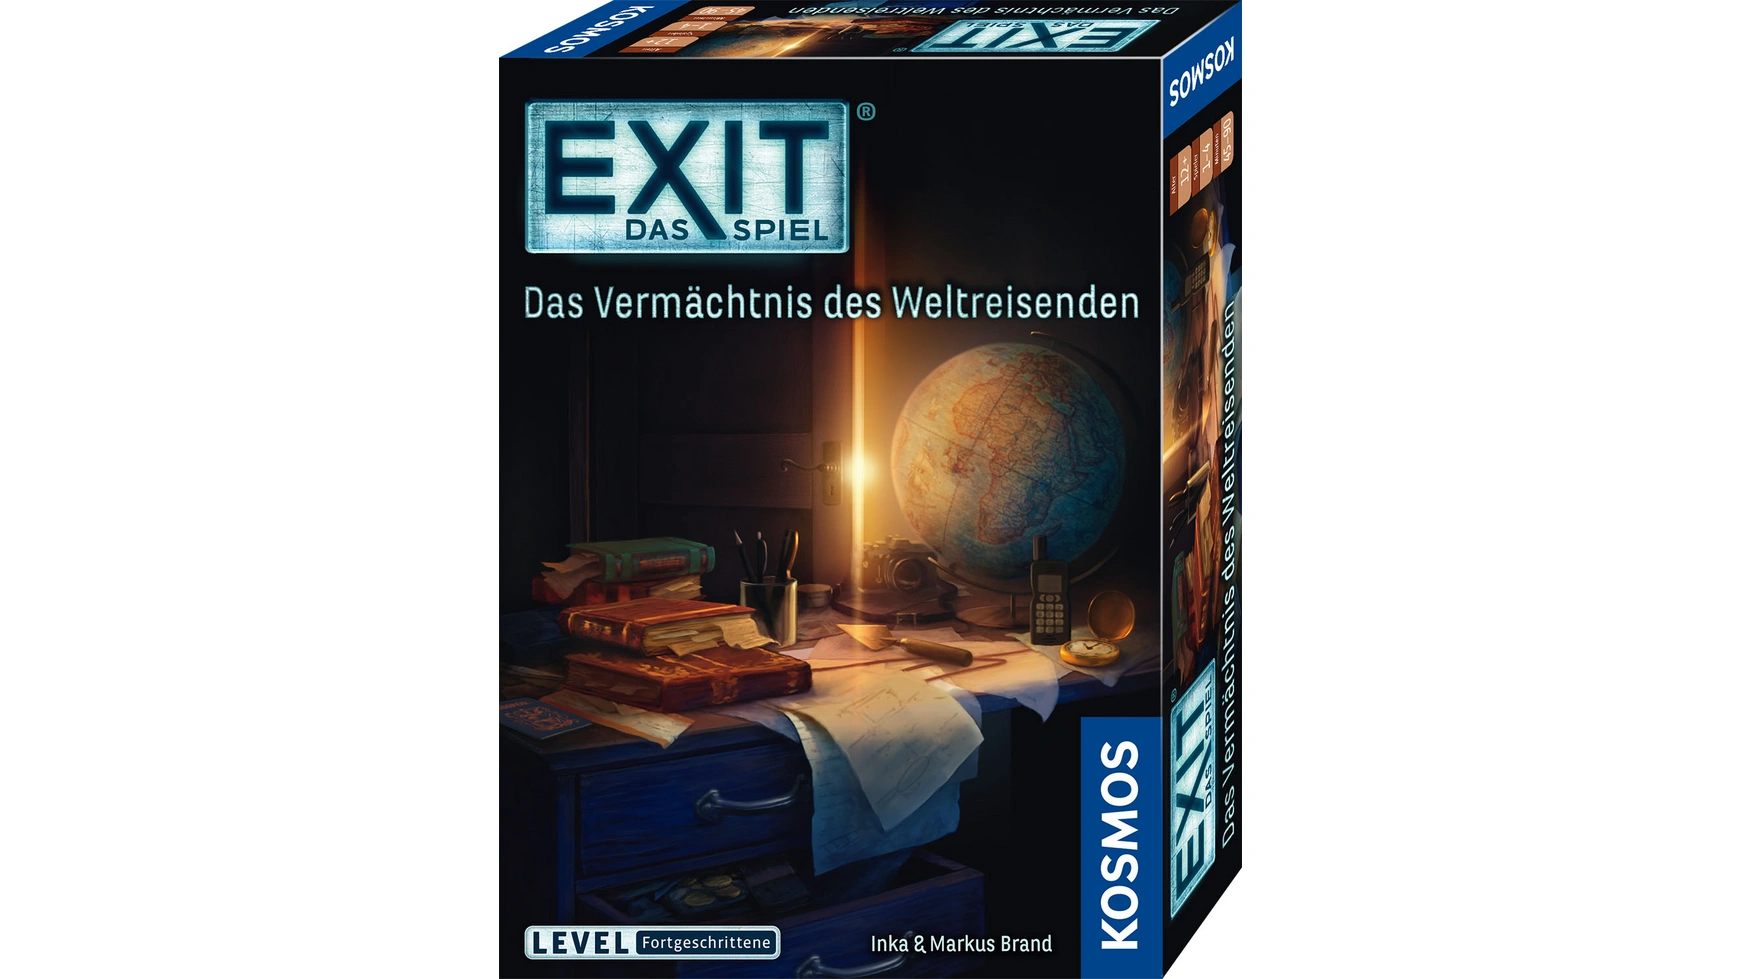 Exit игра: наследие путешественника по миру, уровень: продвинутый Kosmos игра enter exit the gungeon для playstation 4